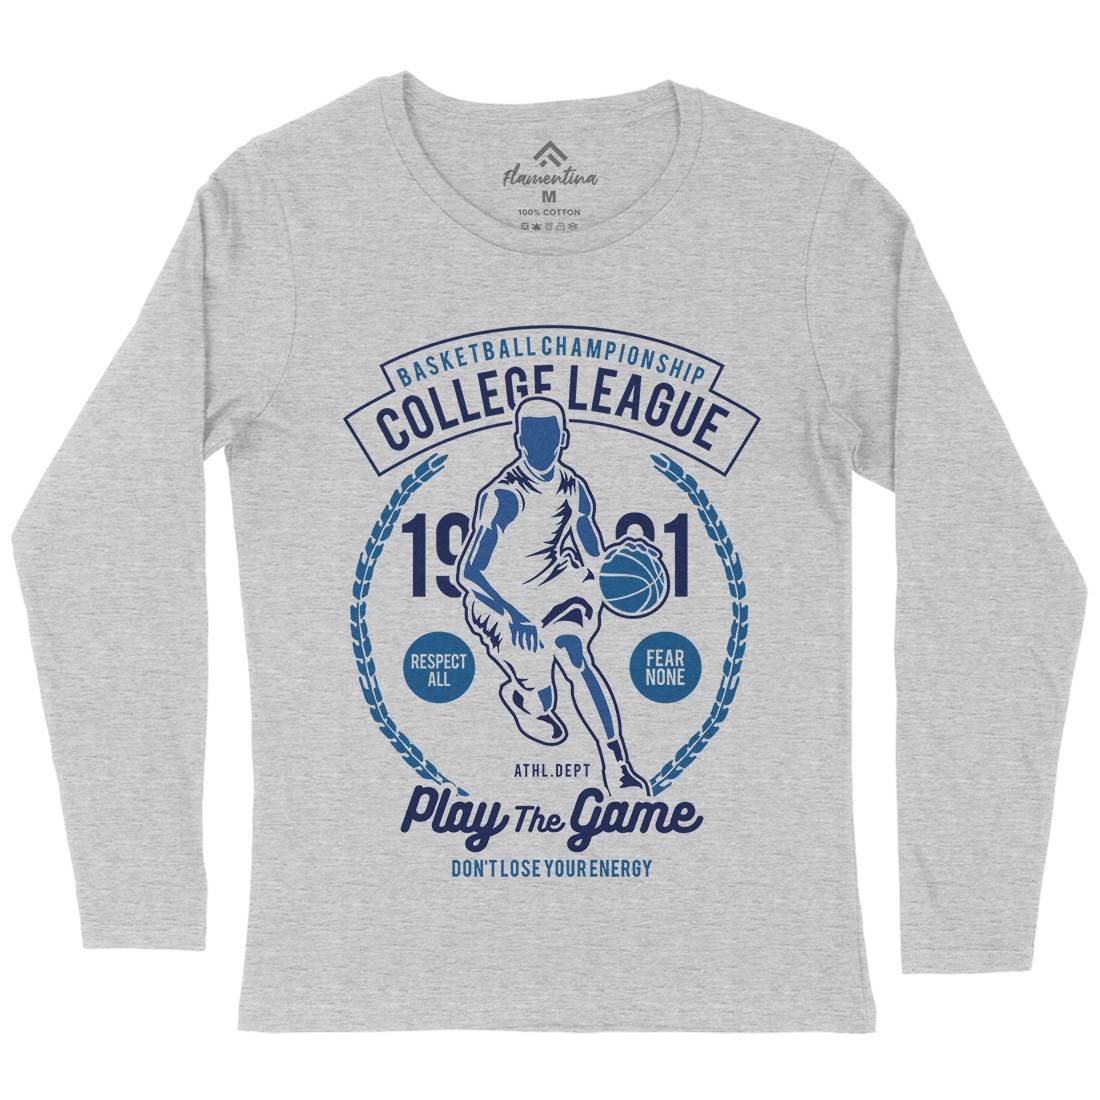 College League Womens Long Sleeve T-Shirt Sport B197